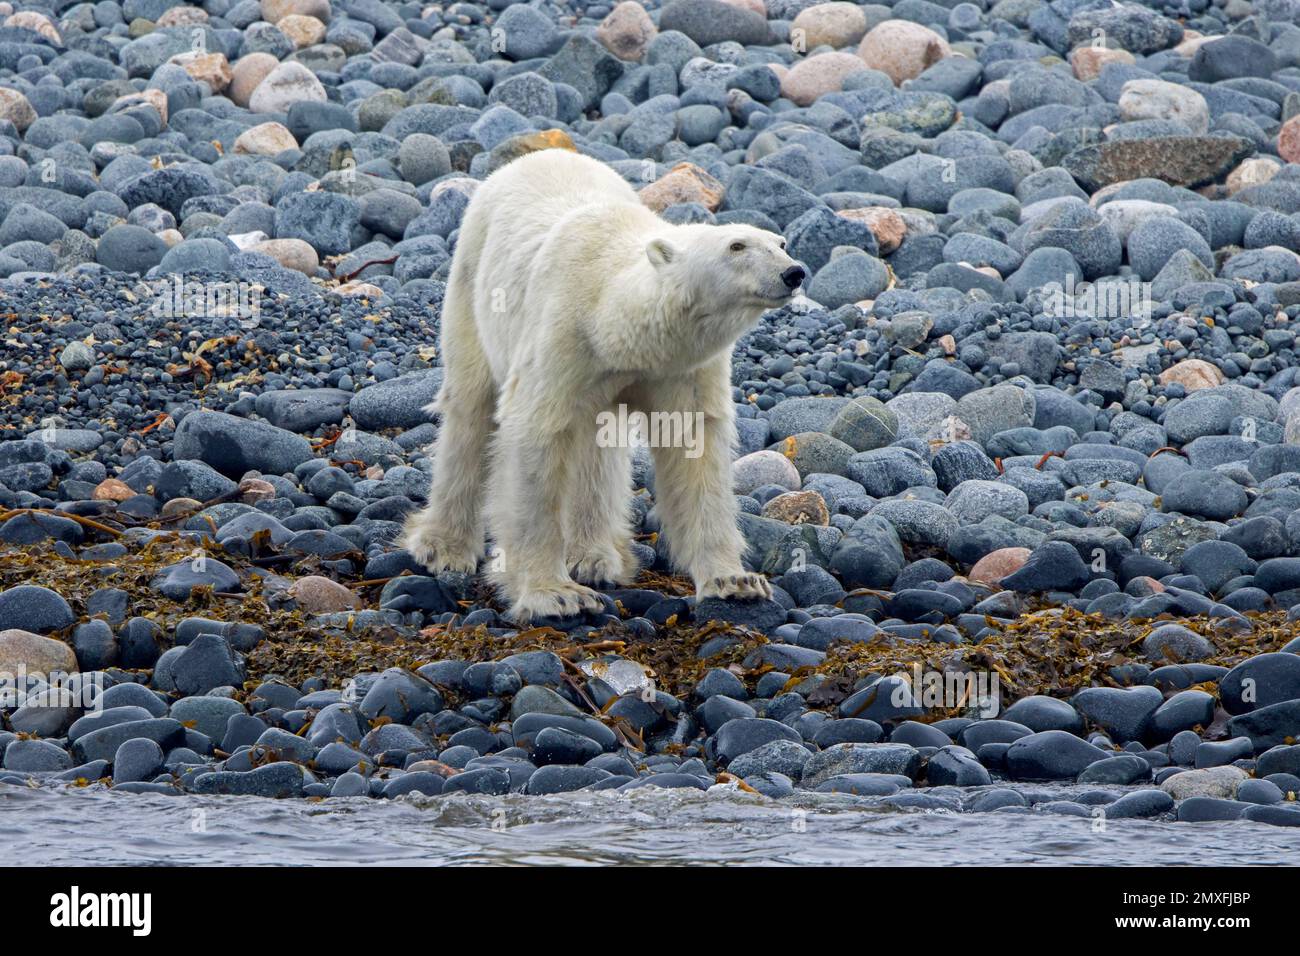 Lone skinny e l'orso polare emaciato (Ursus maritimus) foraging sulla spiaggia di ghiaia lungo la costa di Svalbard in estate, Spitsbergen, Norvegia Foto Stock